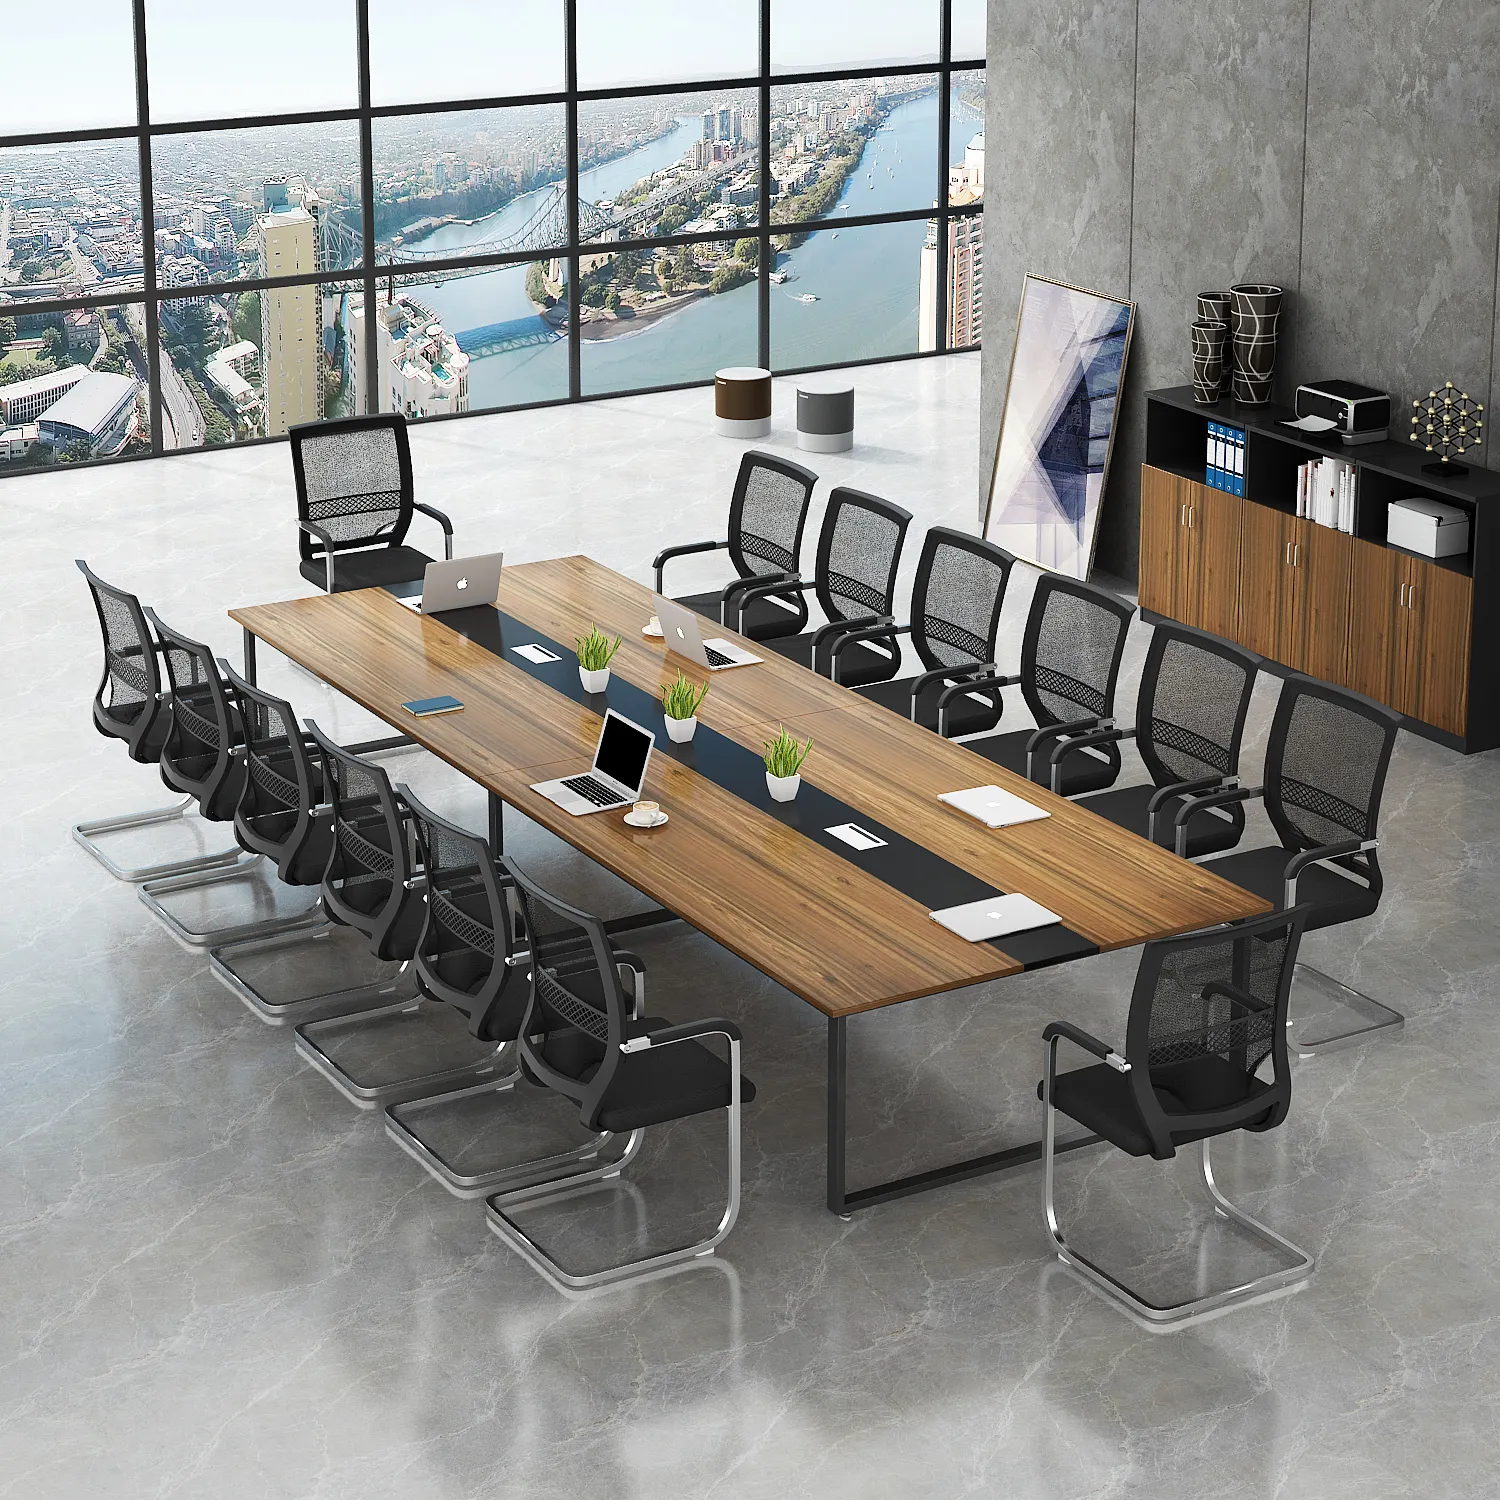 طاولة للاجتماعات أثاث مكتبي طاولة لعدد 8 أشخاص للبيع رخيصة خشبية عصرية من خشب MFC تصميم حسب الطلب HYZ01